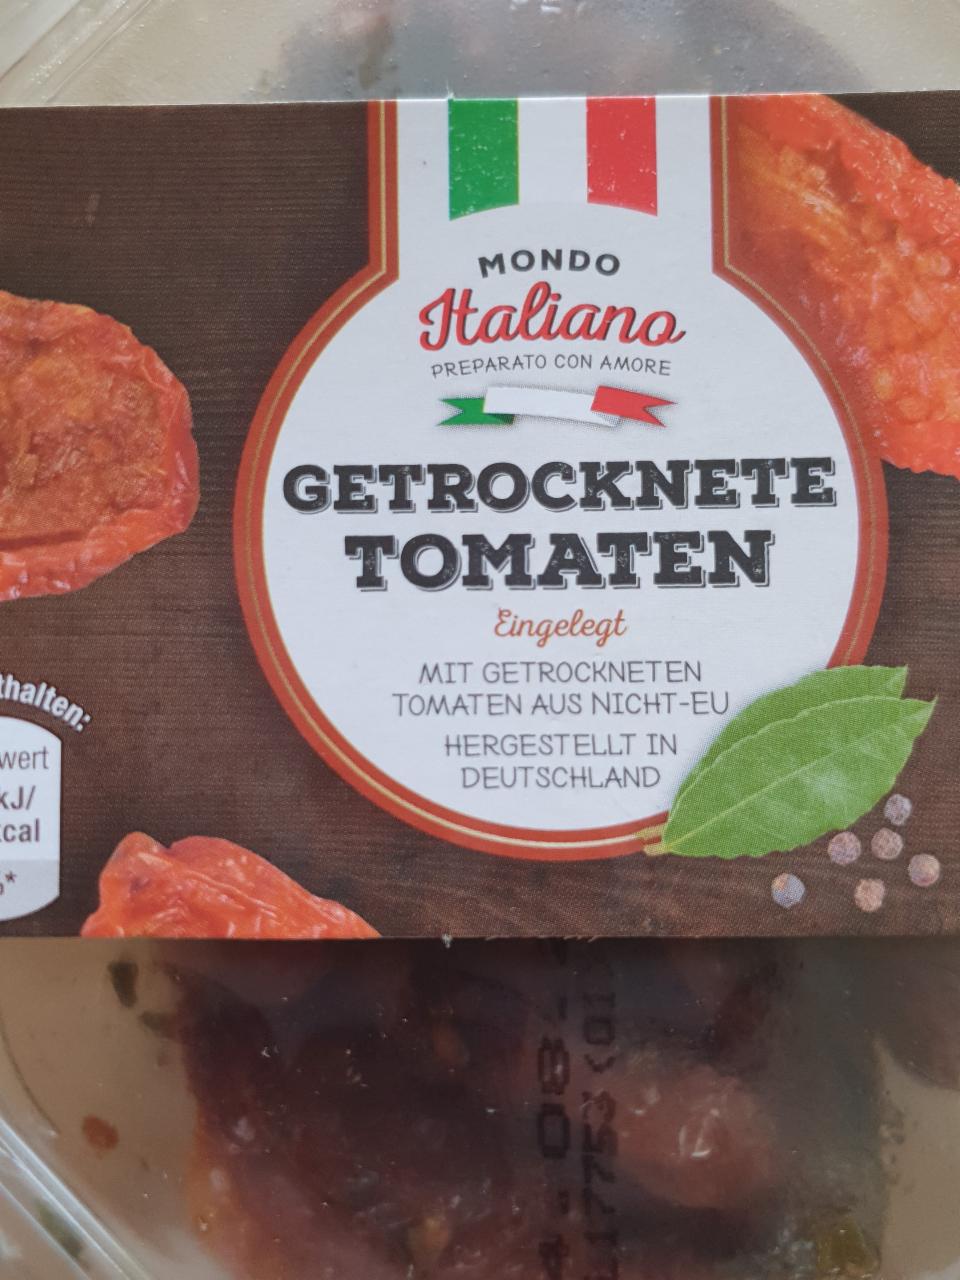 Tomaten kJ Mondo kalorie, nutriční Italiano hodnoty Getrocknete - a